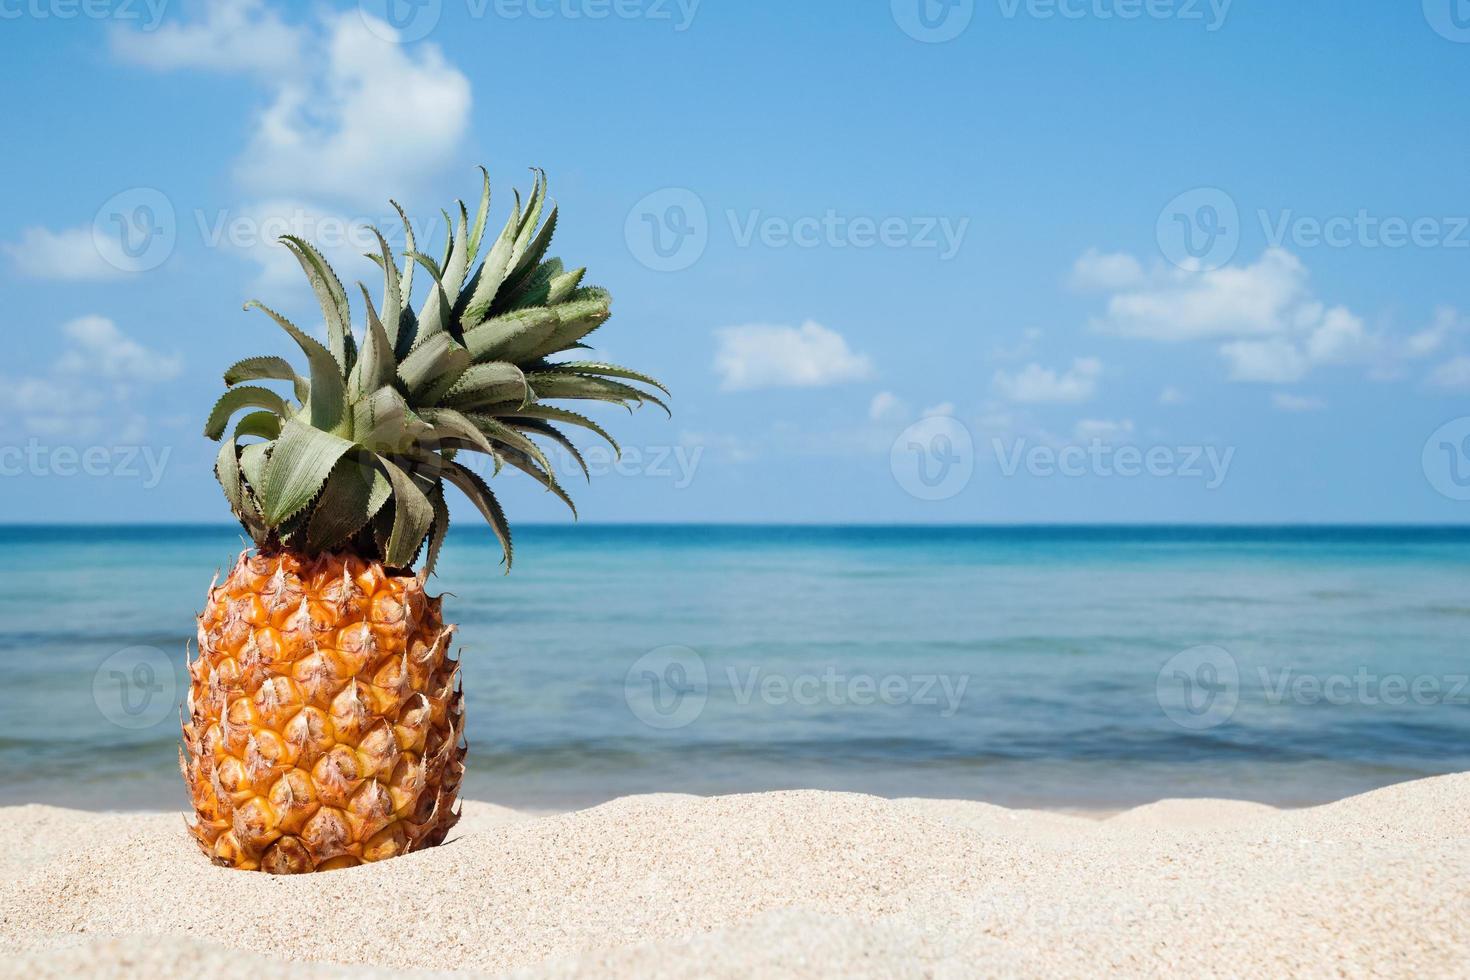 paisaje tropical de verano con piña en la playa de arena blanca sobre el fondo del mar azul y el cielo en un día soleado, con espacio para copiar. foto